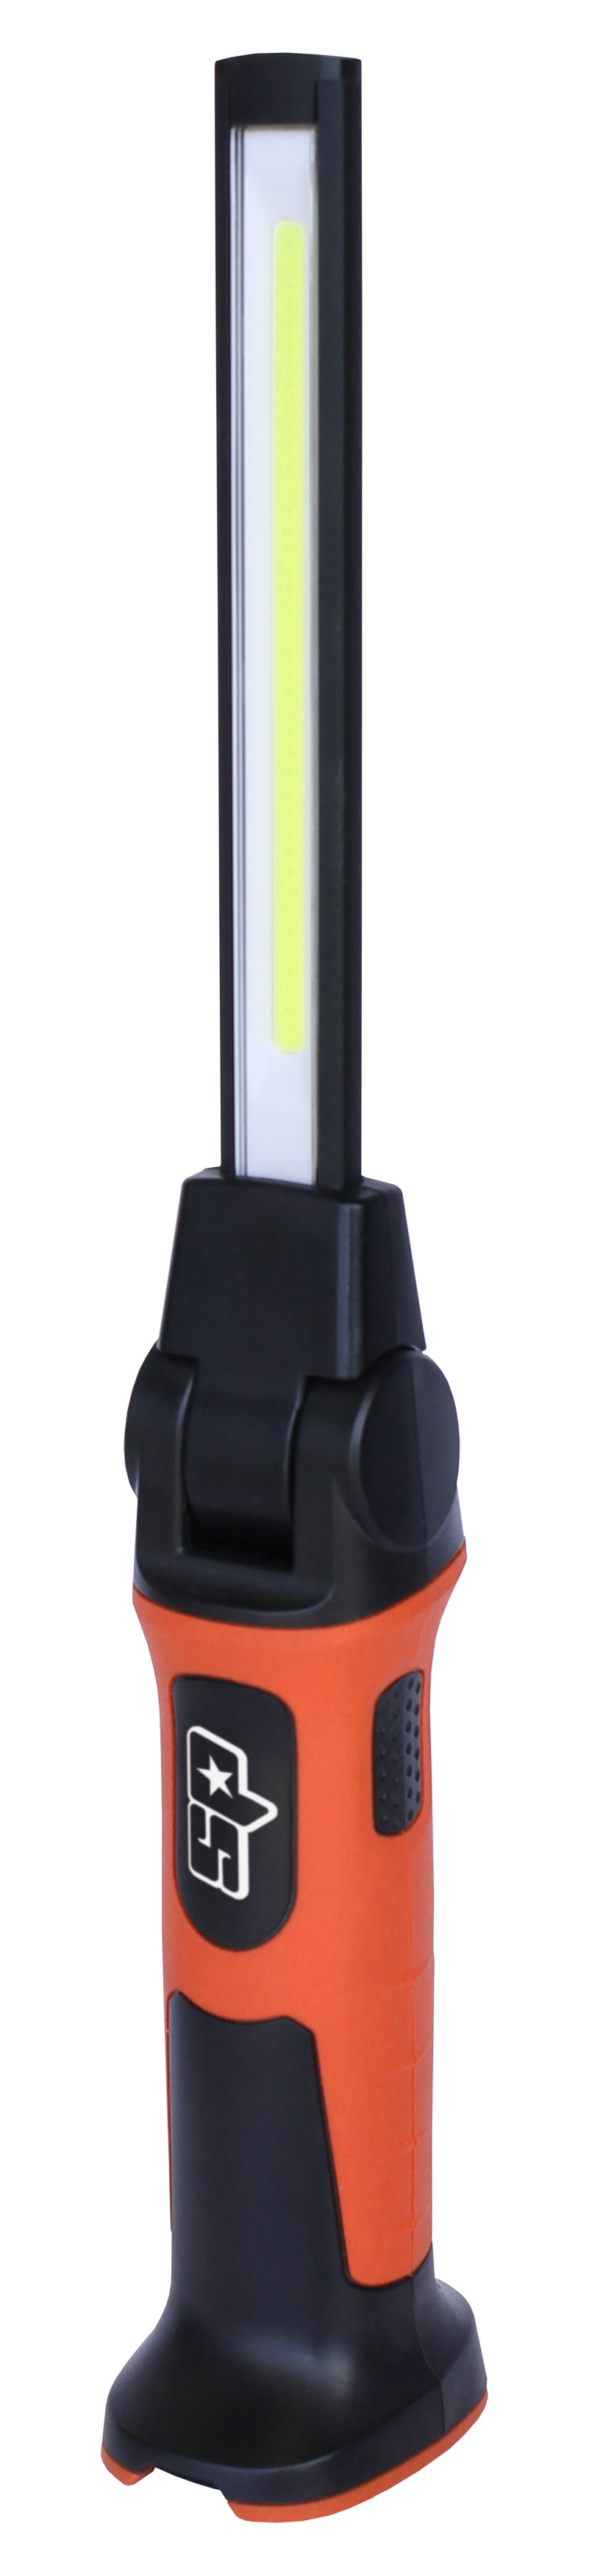 COB LED Slim Work Light - 120 Rotatable